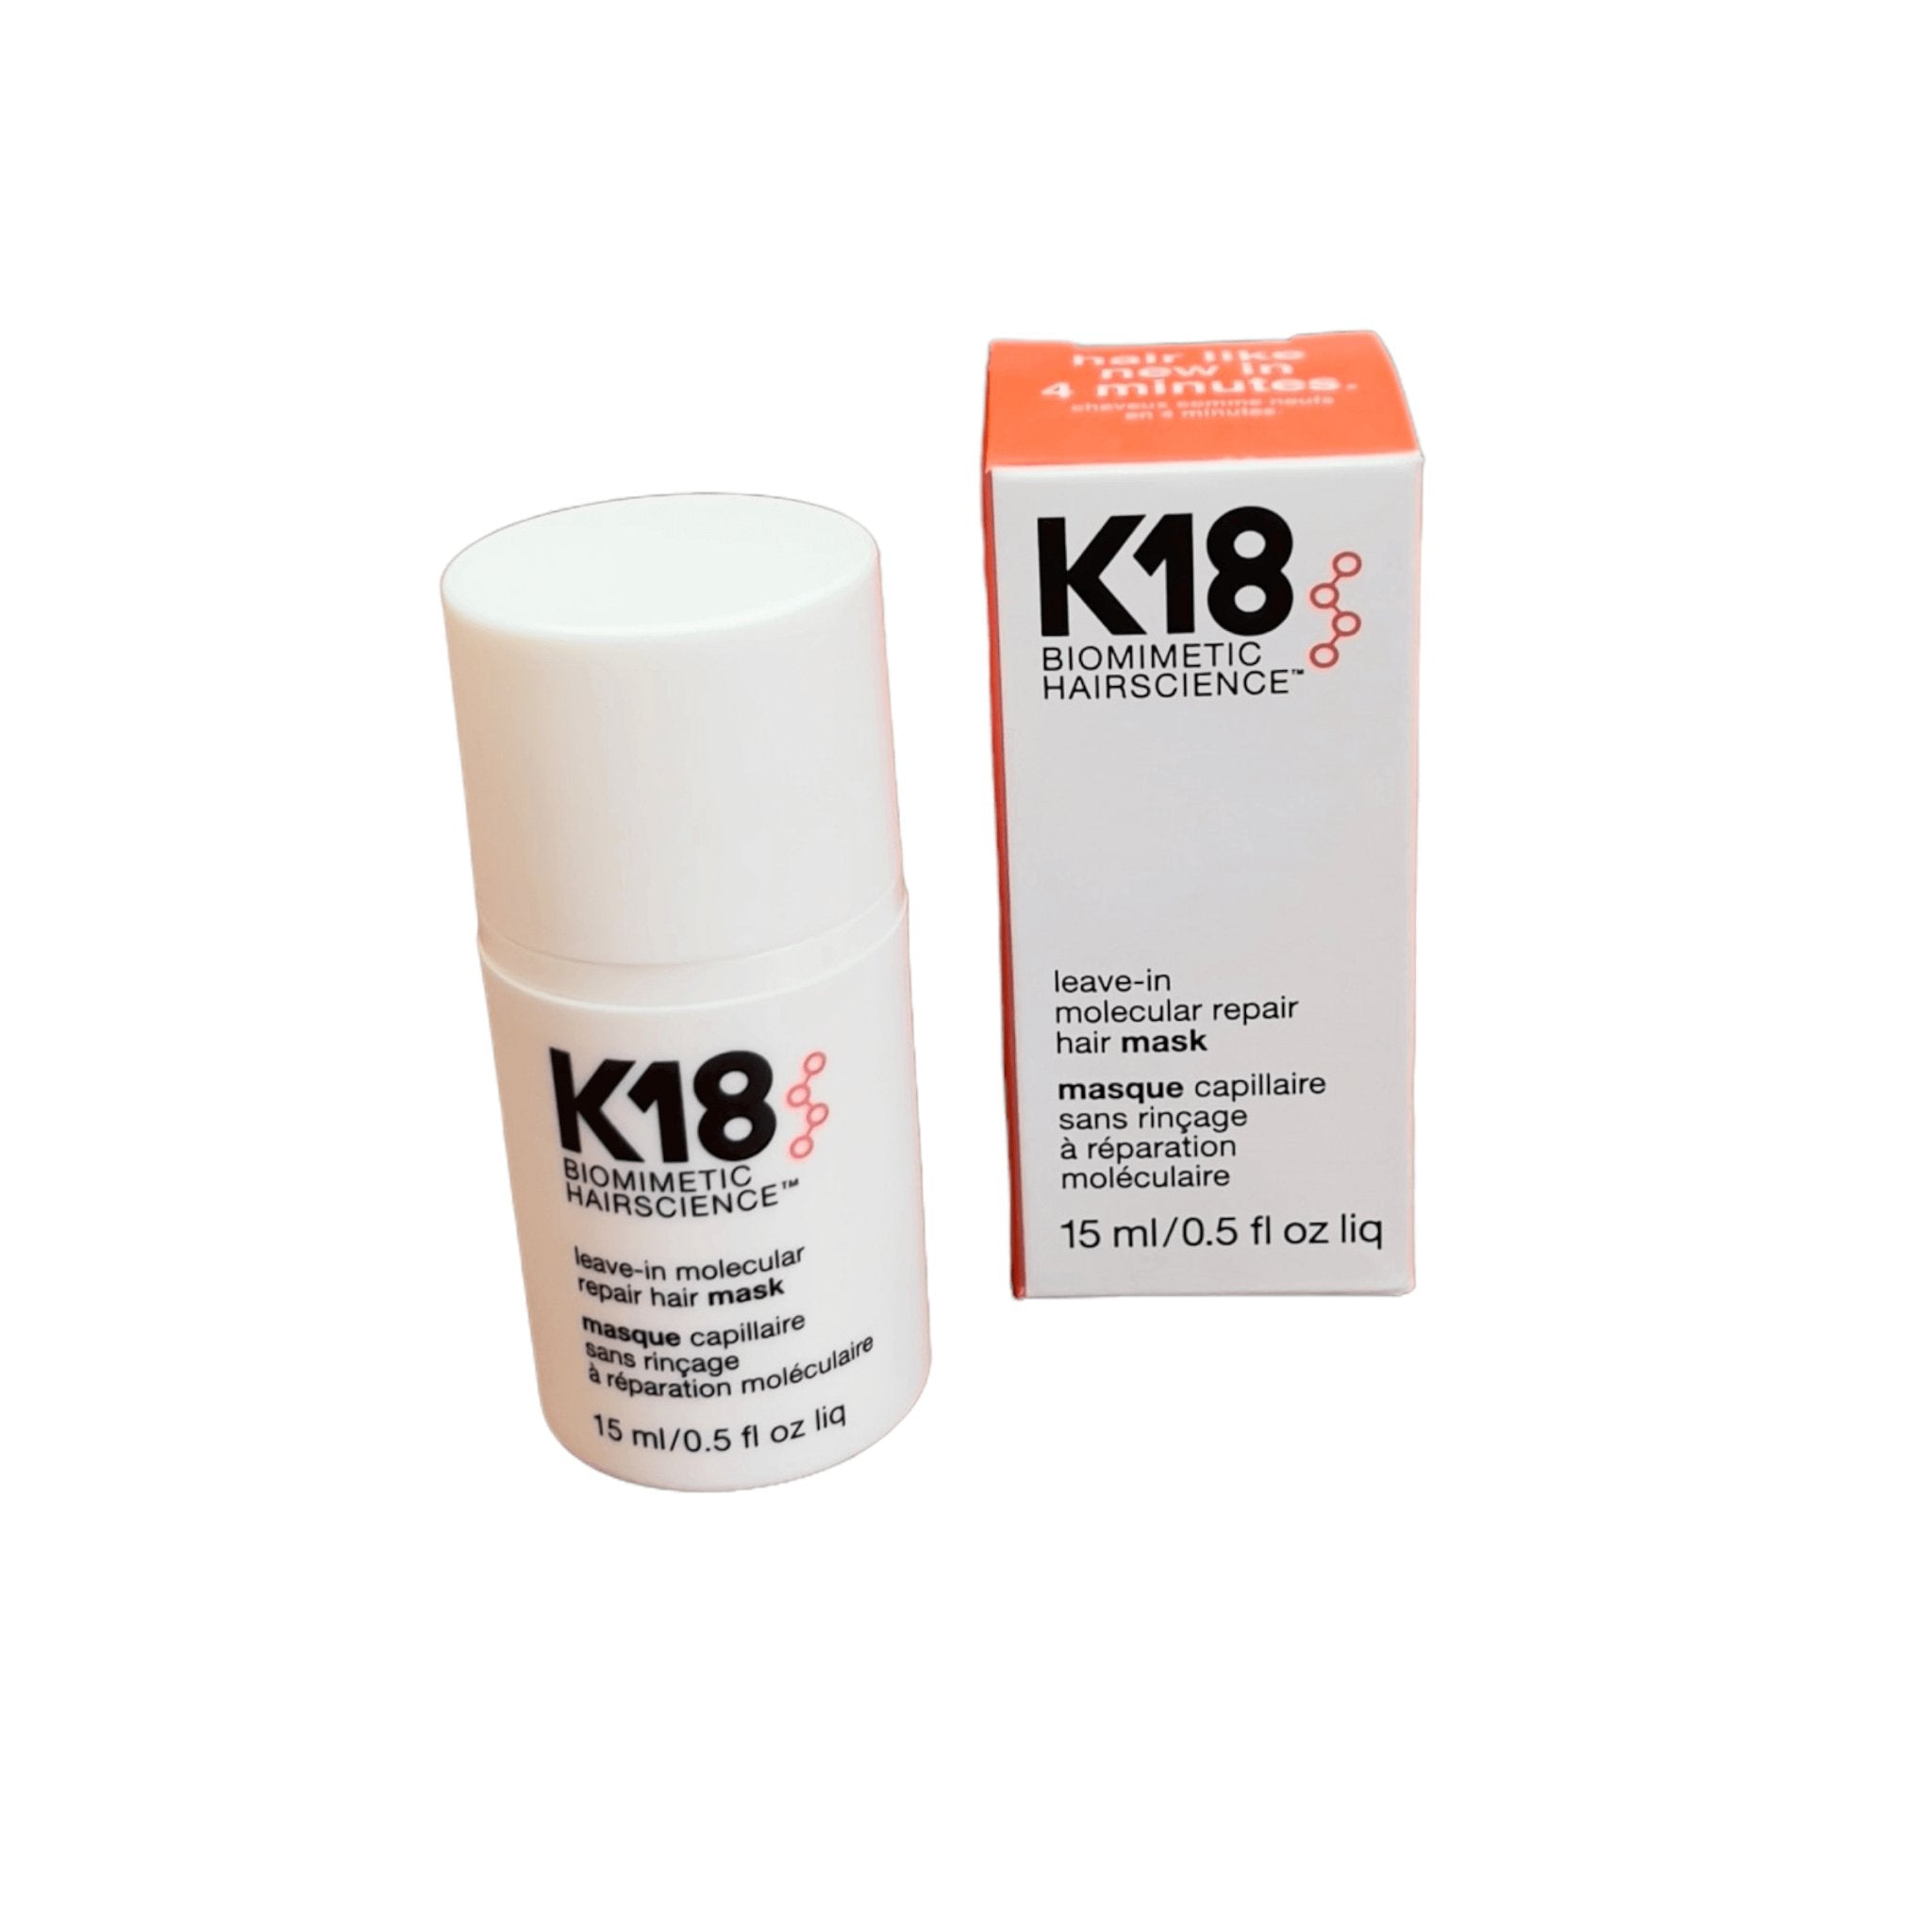 K18 Hair Repair cream for anti-aging and hair rejuvenation. (Product: K18 Hair Repair, Brand: K18 Hair Repair)